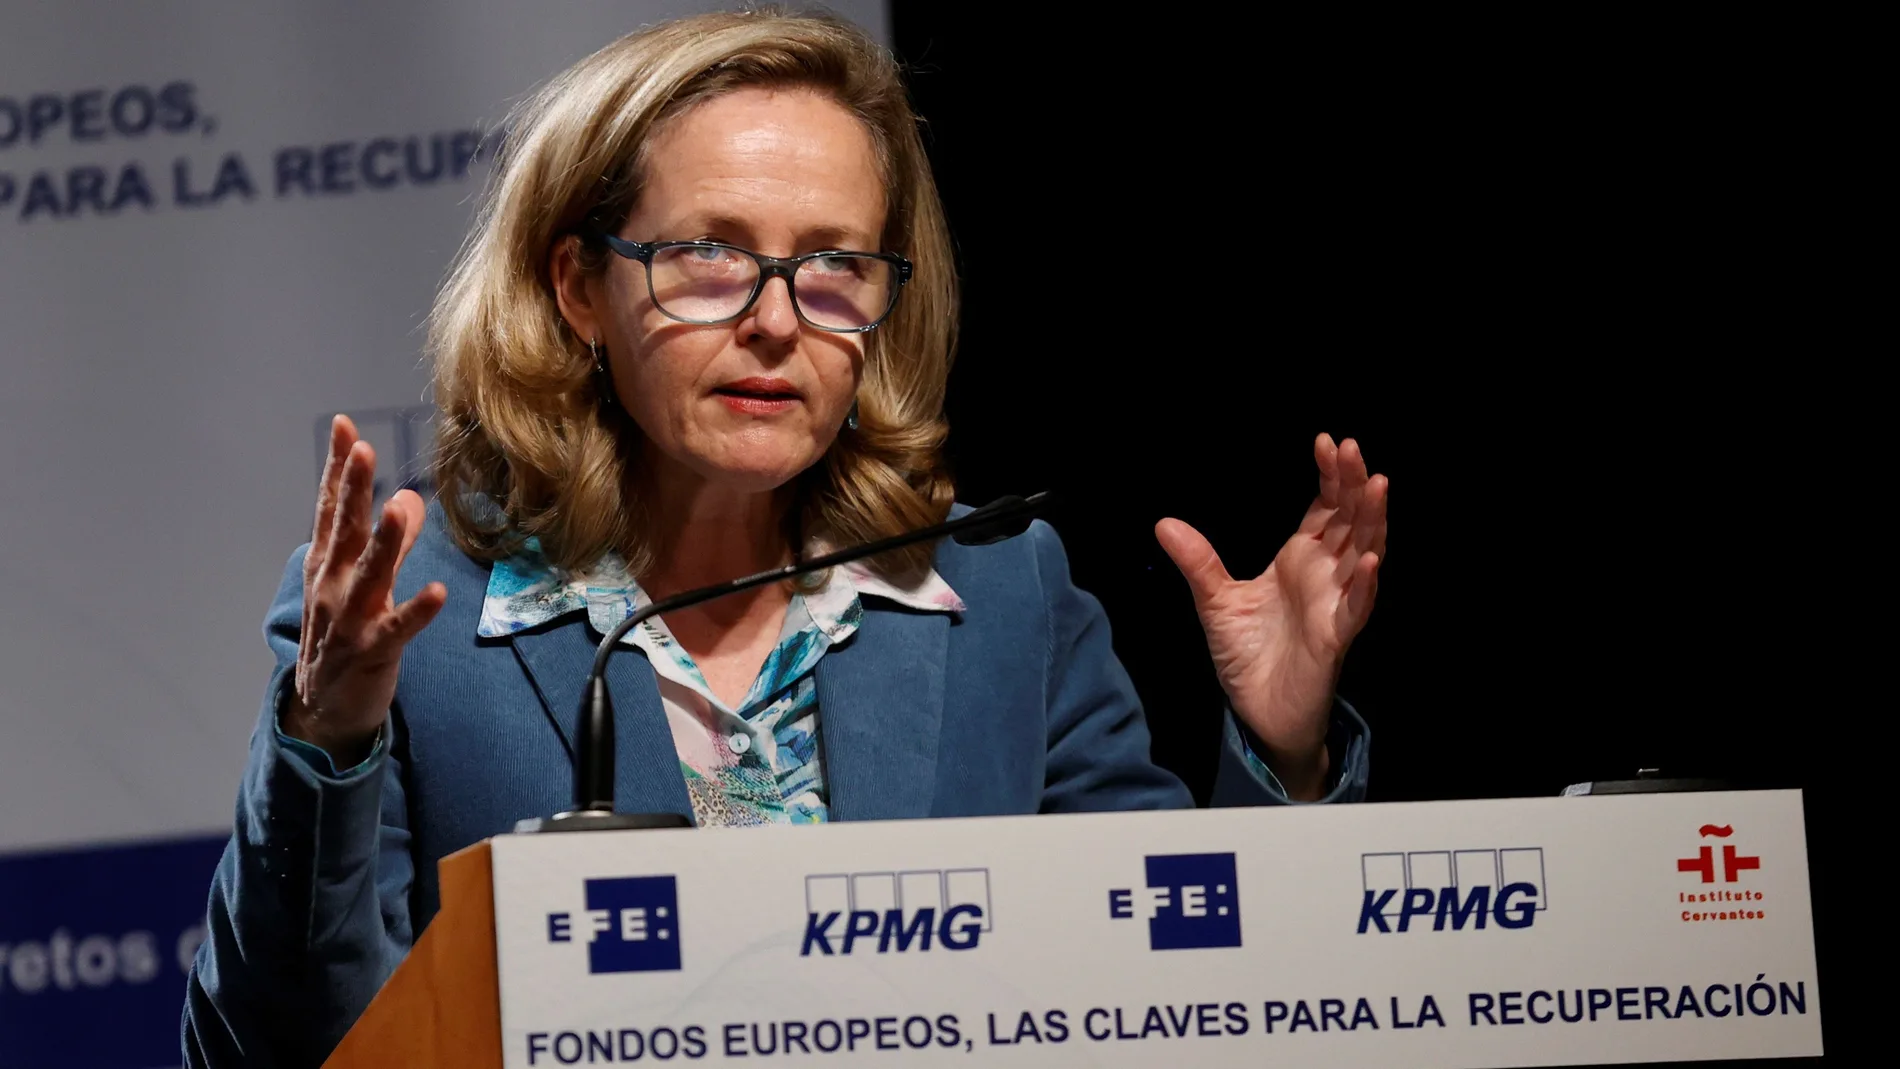 La vicepresidenta tercera y ministra de Asuntos Económicos y Transformación Digital, Nadia Calviño, interviene durante el II Foro sobre Fondos Europeos organizado por EFE y KPMG en el Instituto Cervantes en Madrid